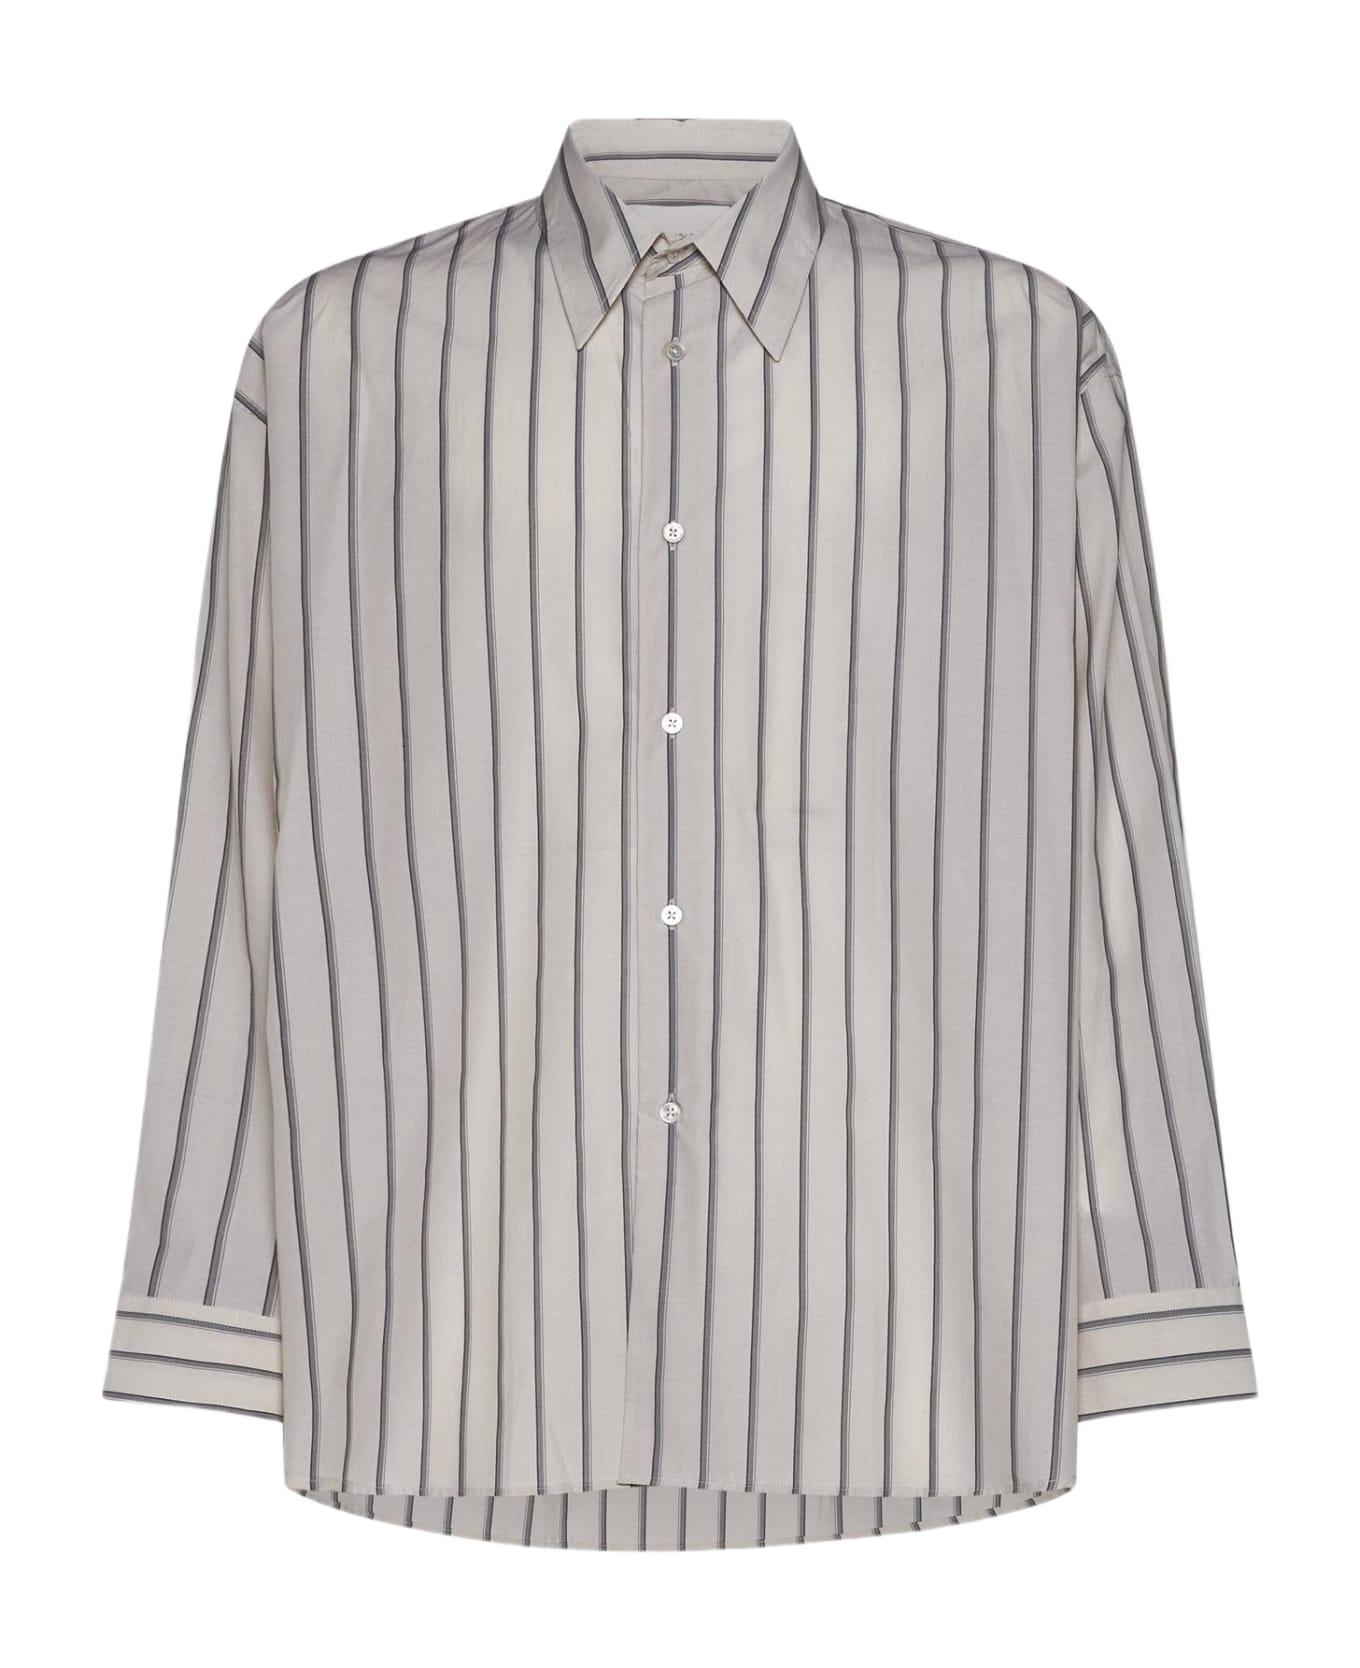 Studio Nicholson Loche Pinstriped Cotton Shirt - BEIGE